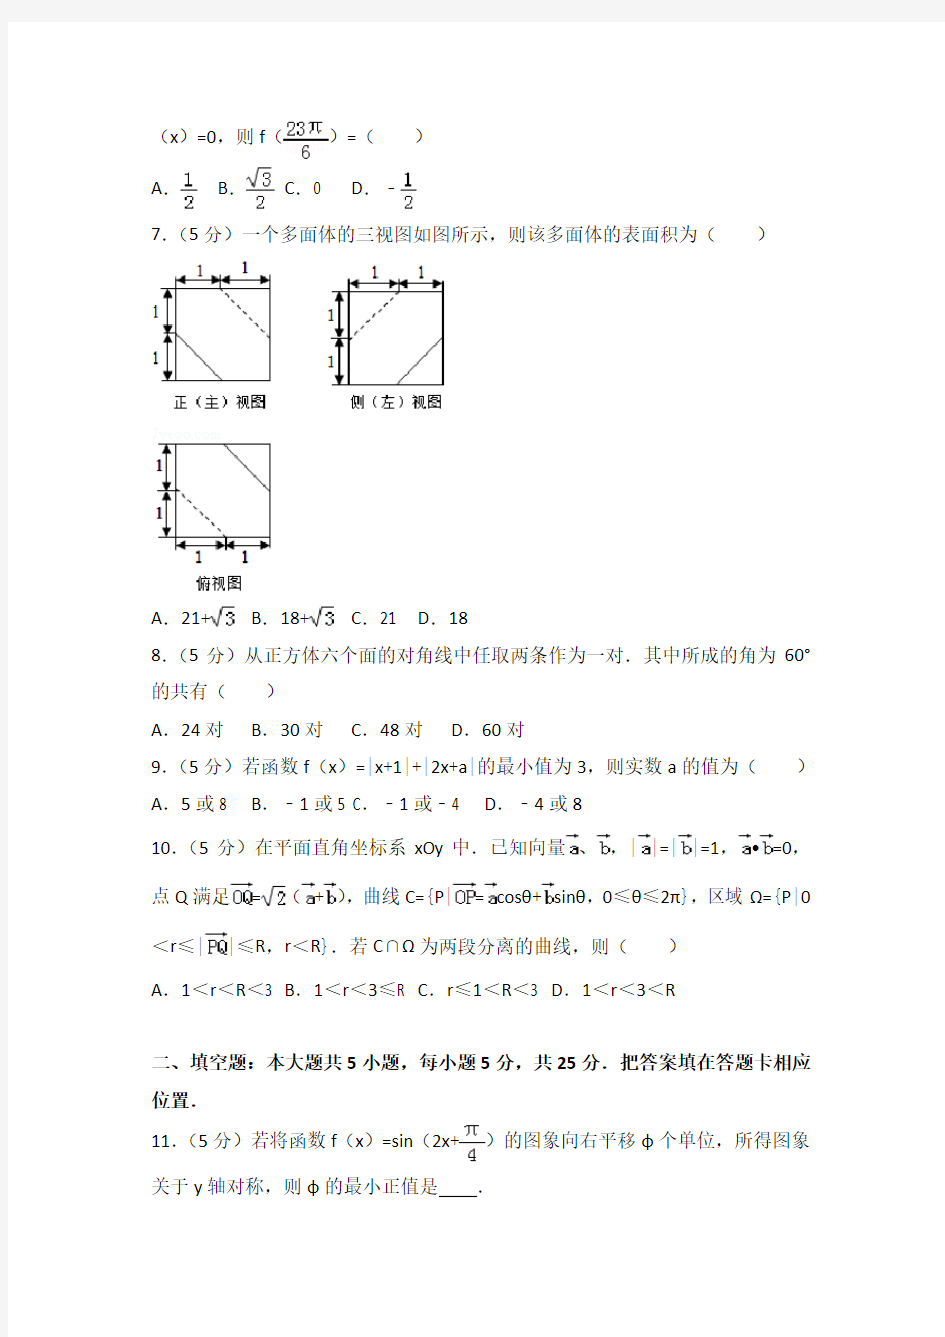 2014年安徽省高考数学试卷(理科)附送答案